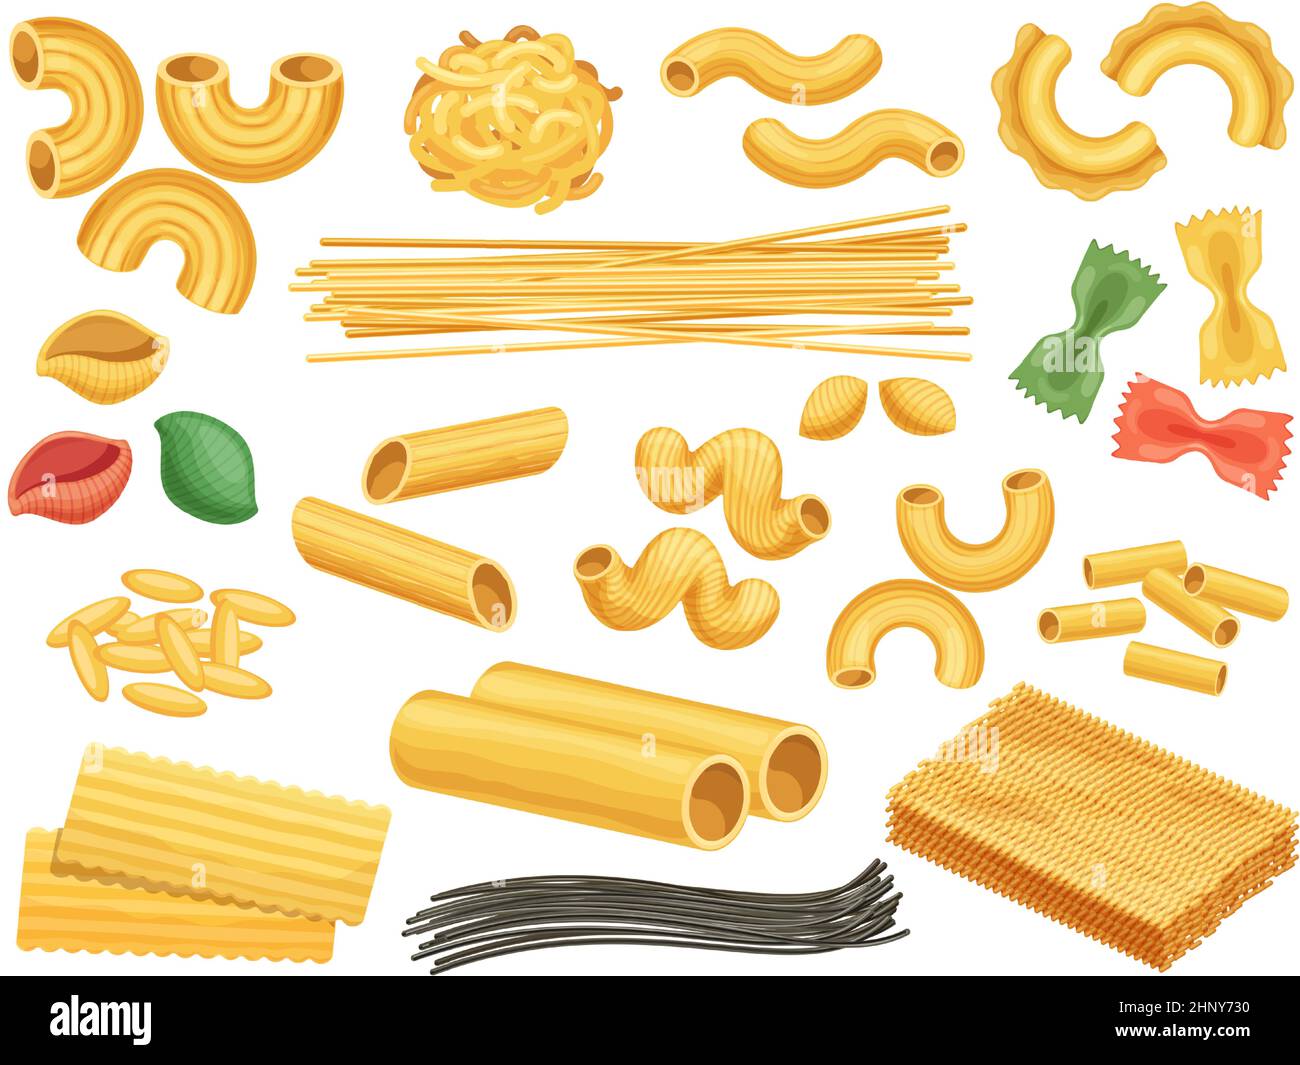 Pasta di grano cartoon, tagliatelle, fettuccine e spaghetti neri. Cucina italiana pasta alimentare, conchiglie, spirale, pennino tipo vettore set. Assortme Illustrazione Vettoriale